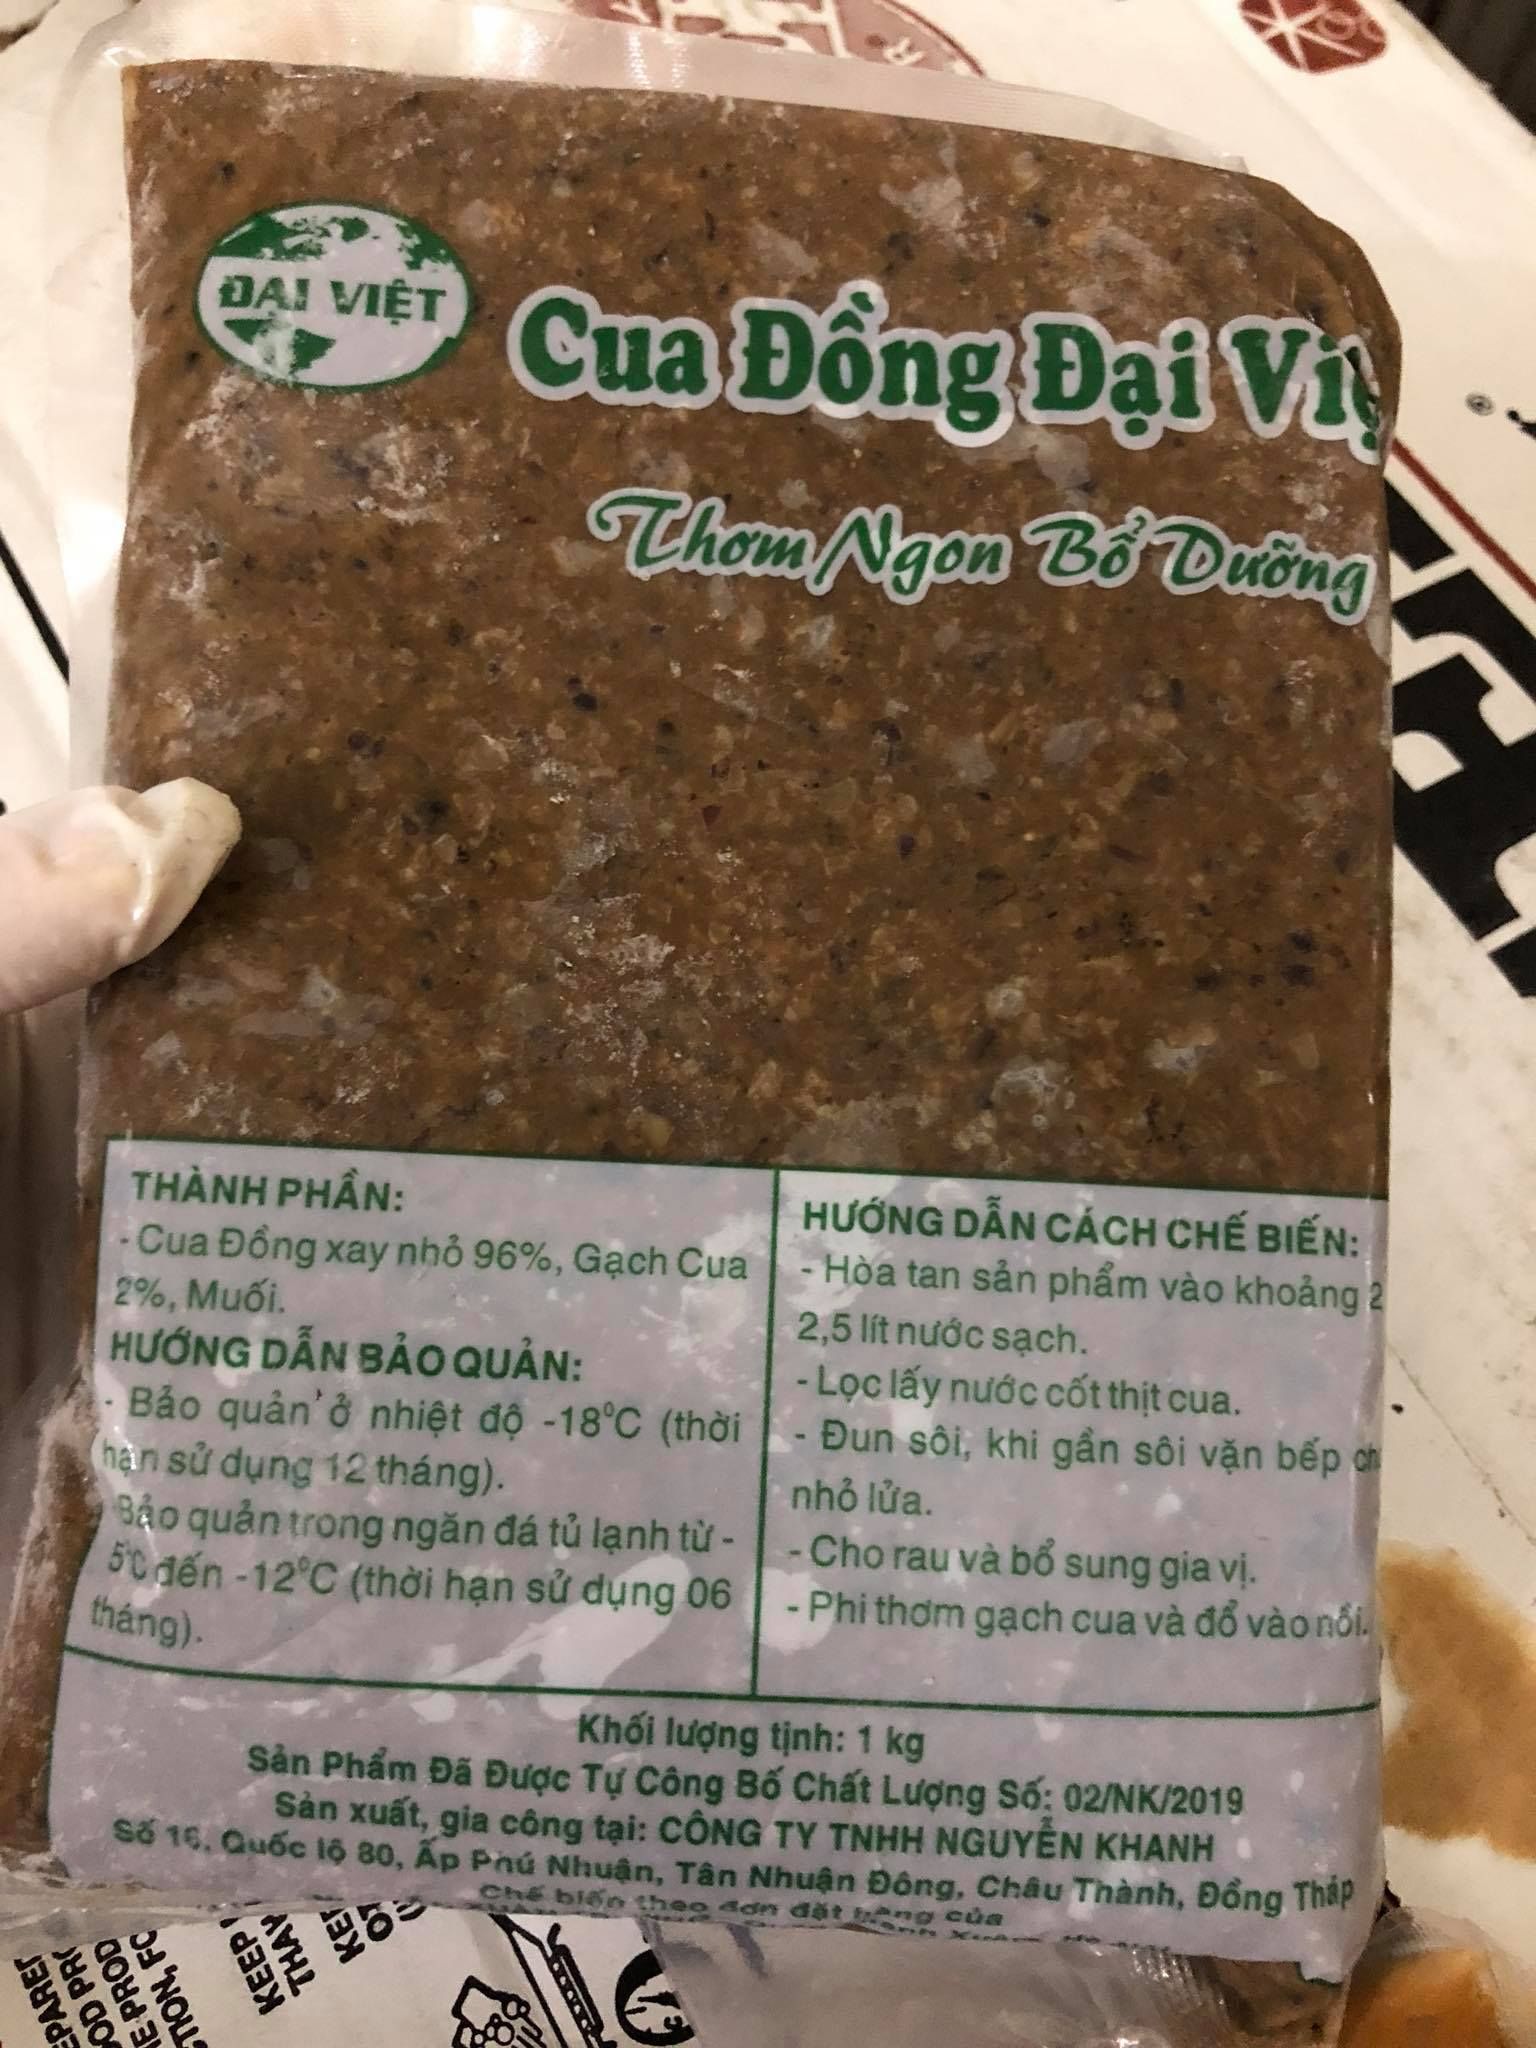  Cua đồng xay Đại Việt 1kg 